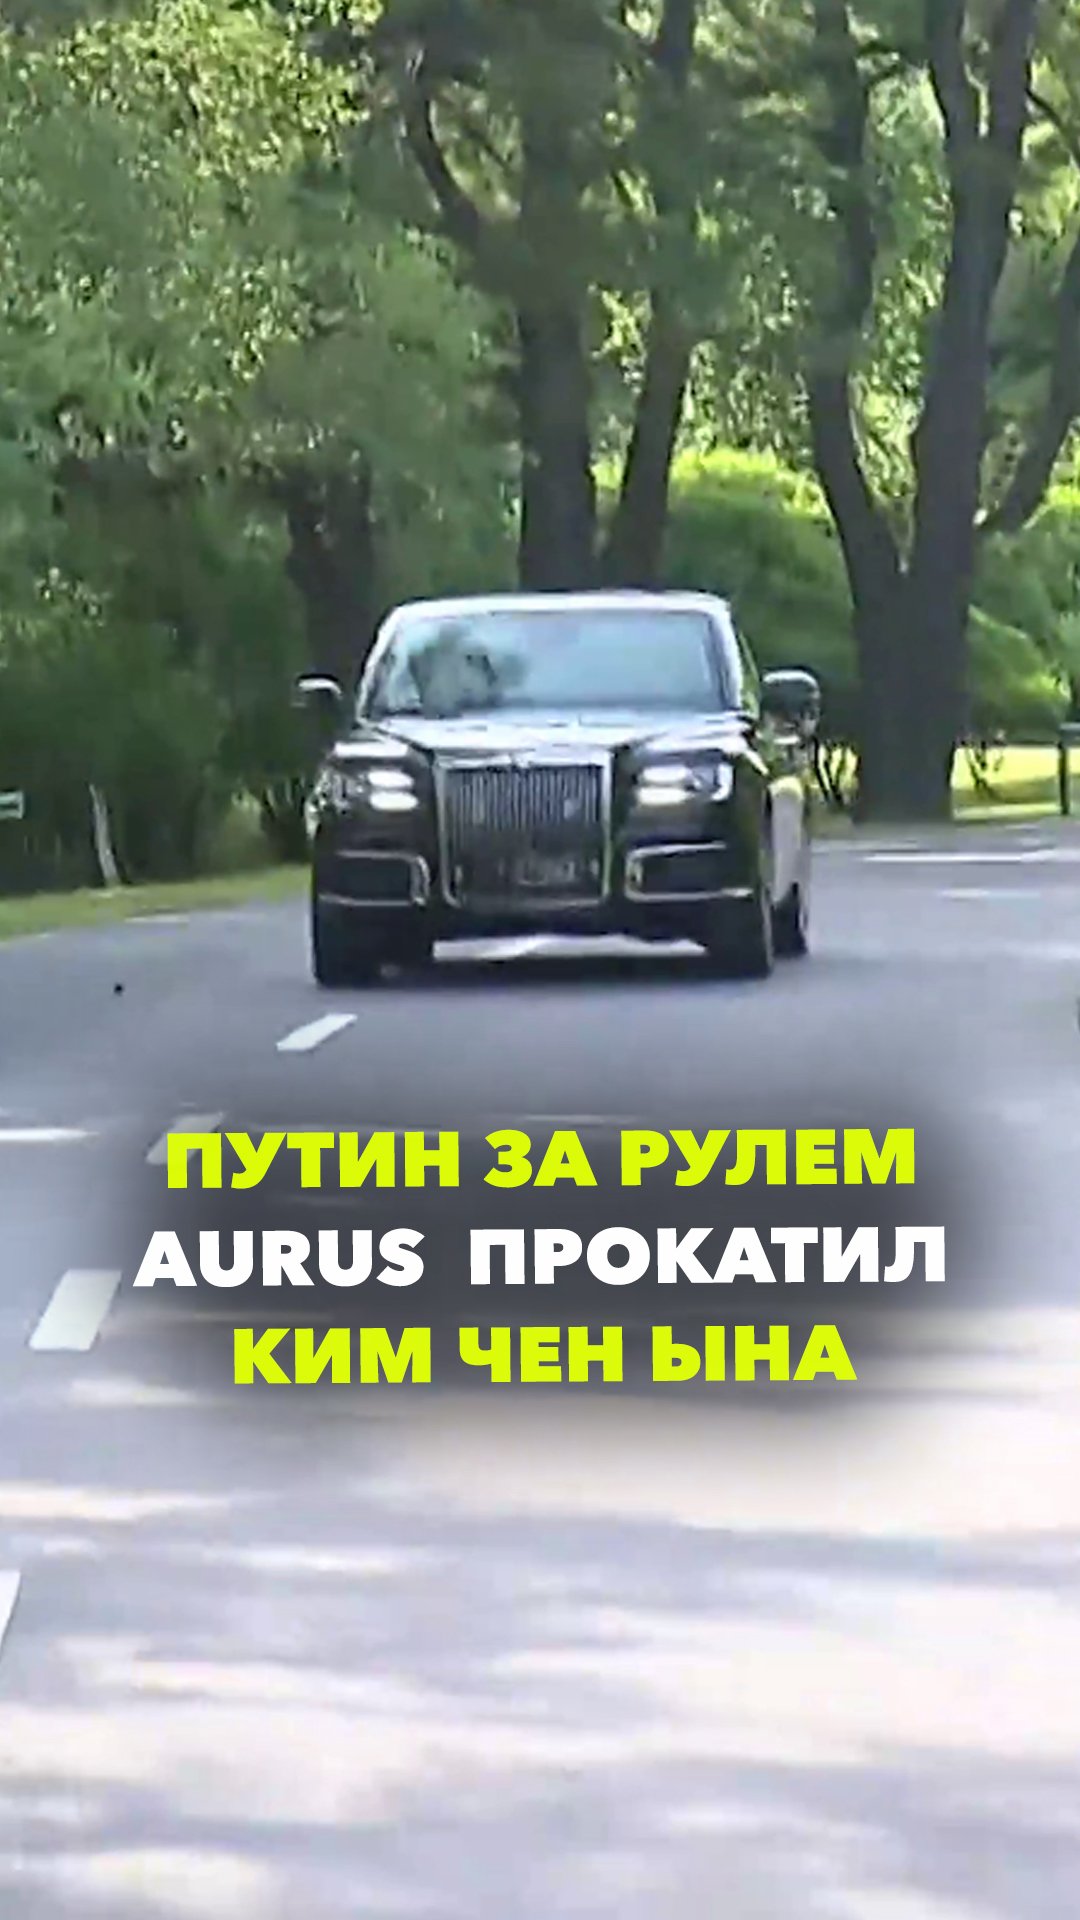 Путин неожиданно сел за руль Aurus, чтобы прокатить председателя КНДР Ким Чен Ына на лимузине